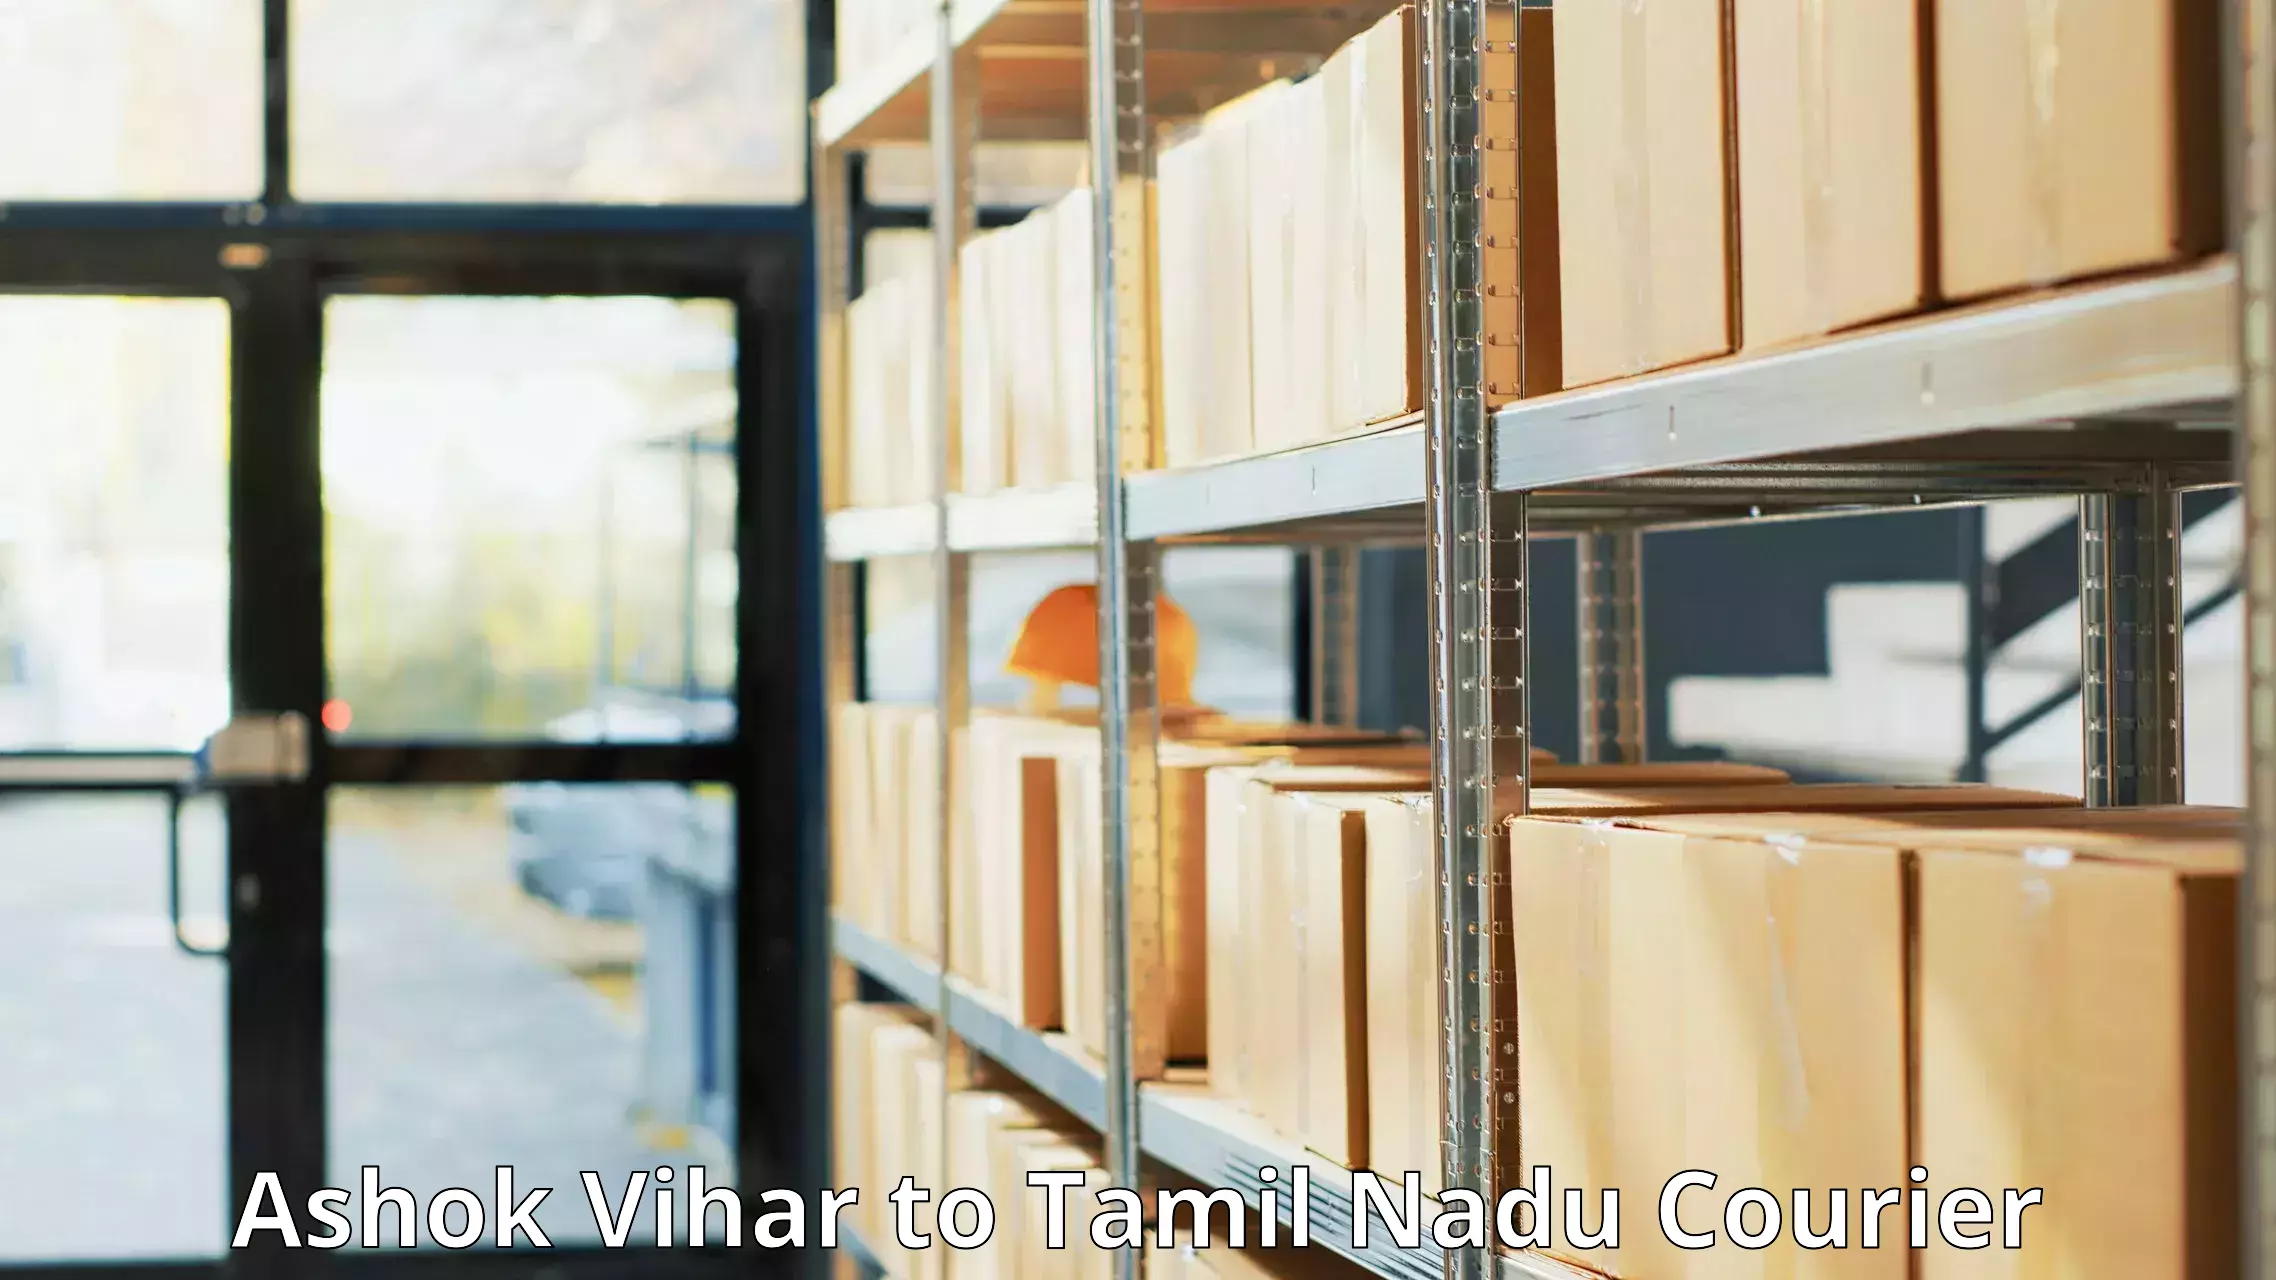 Automated shipping processes Ashok Vihar to Narikkudi